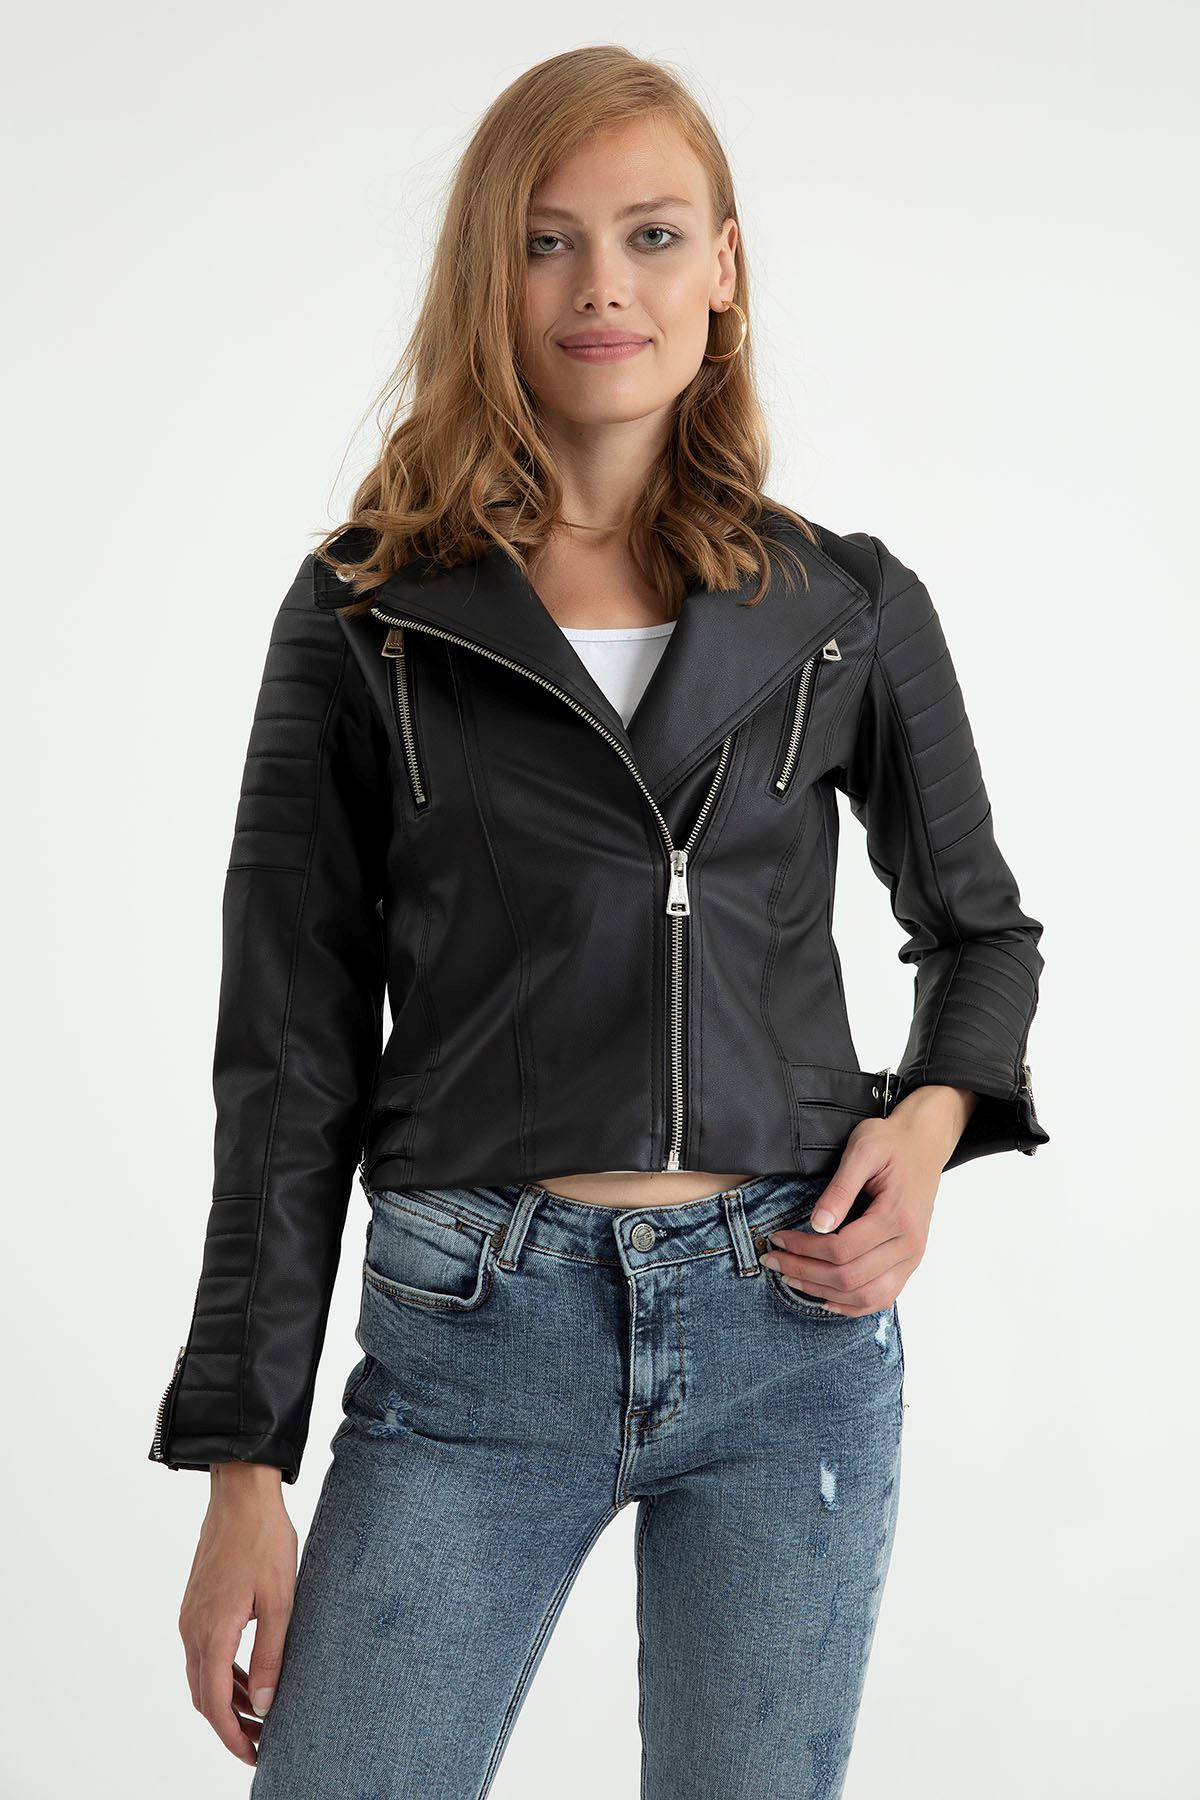 экокожа тканьна молнии женский пиджак - Чёрный